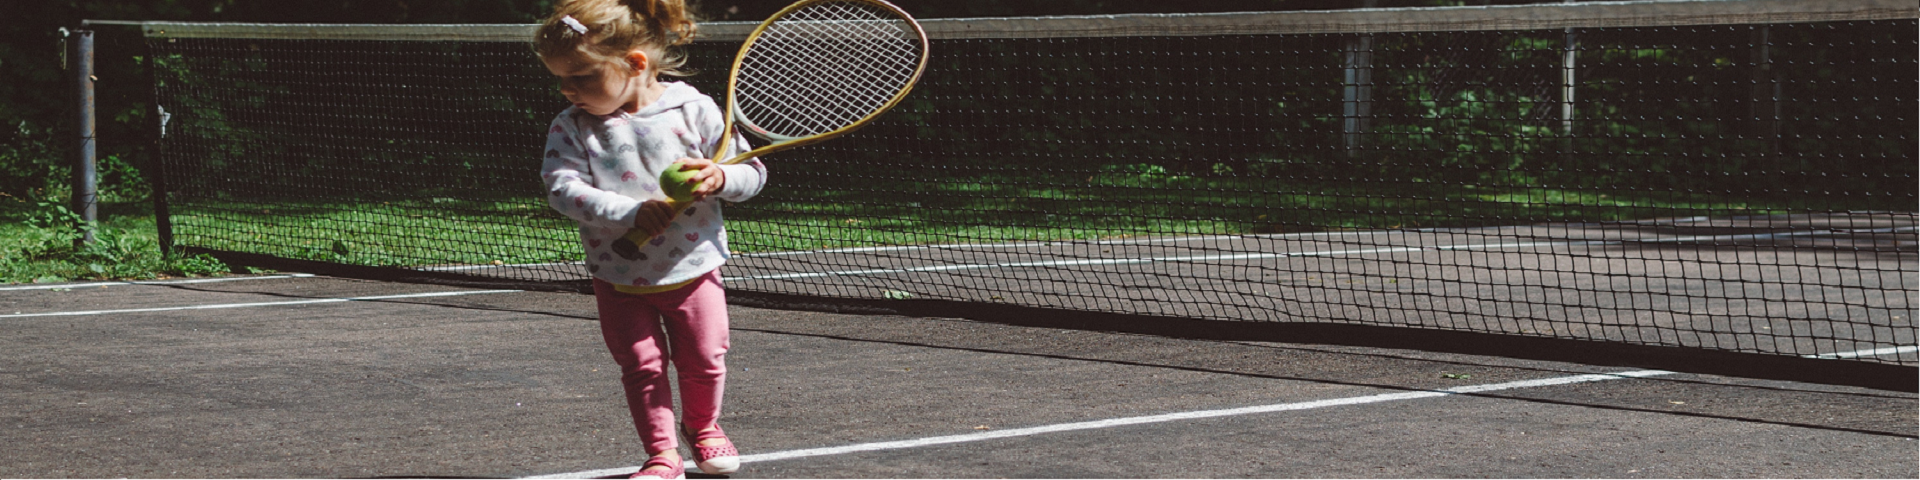 Toddler playing tennis